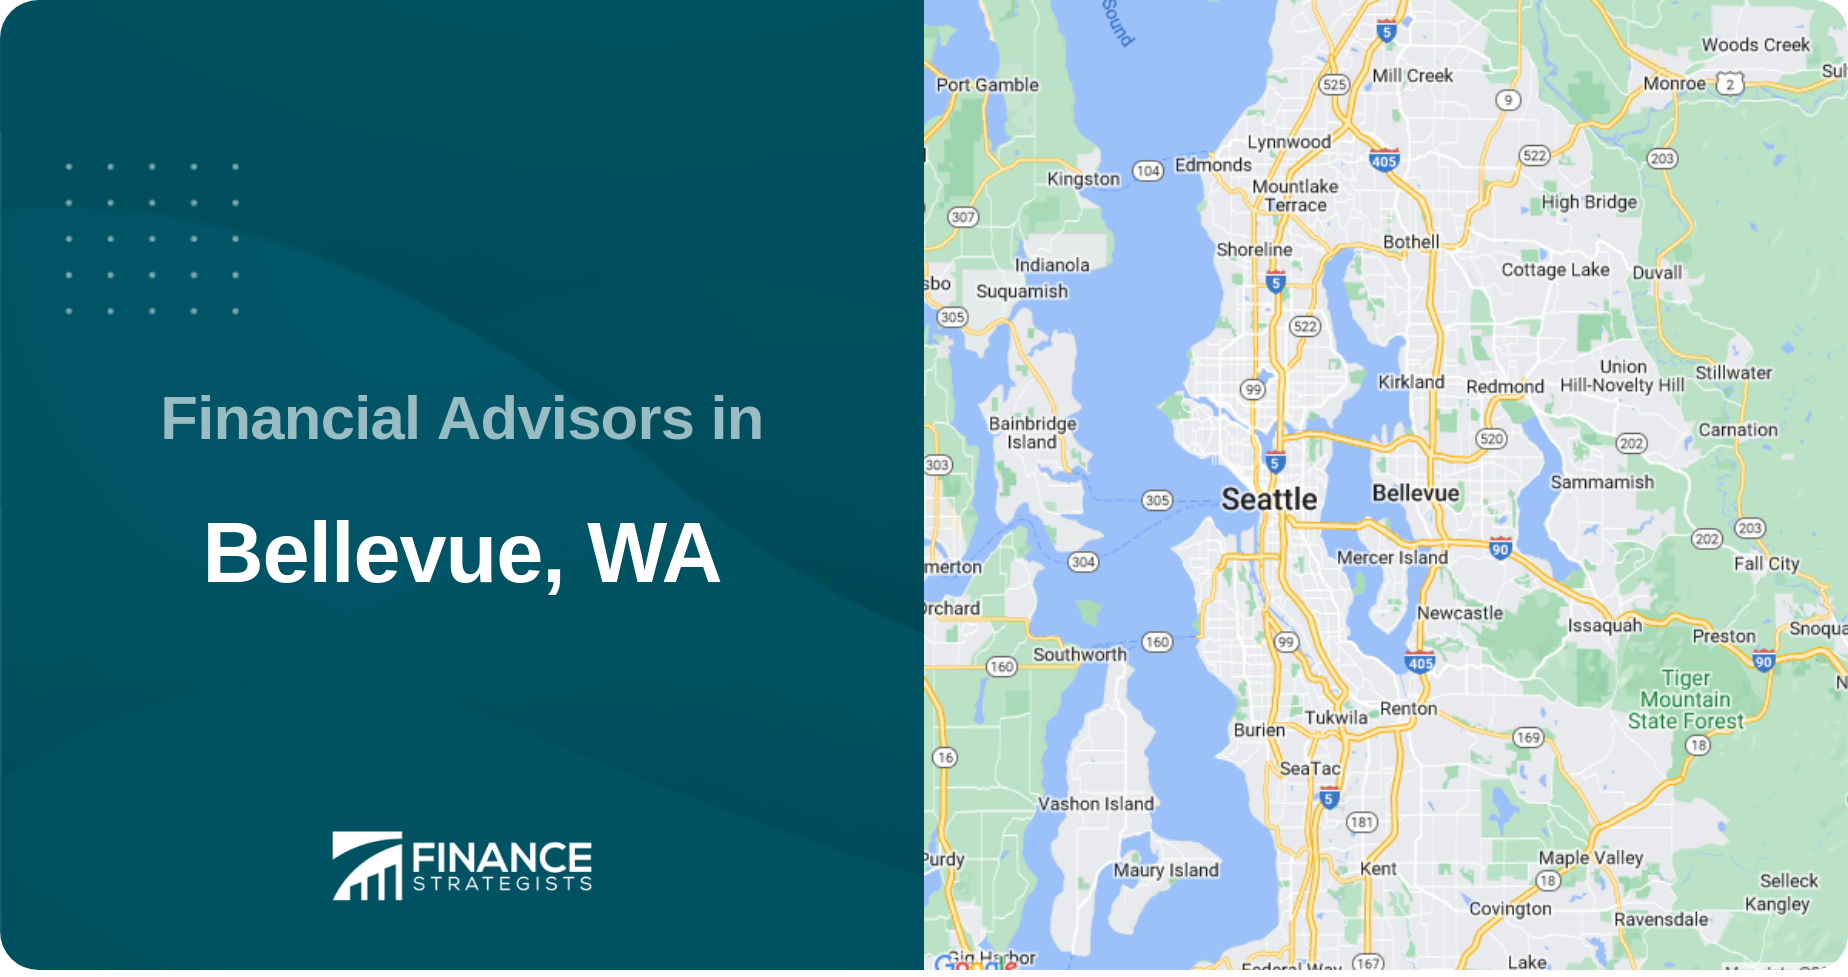 Financial Advisors in Bellevue, WA